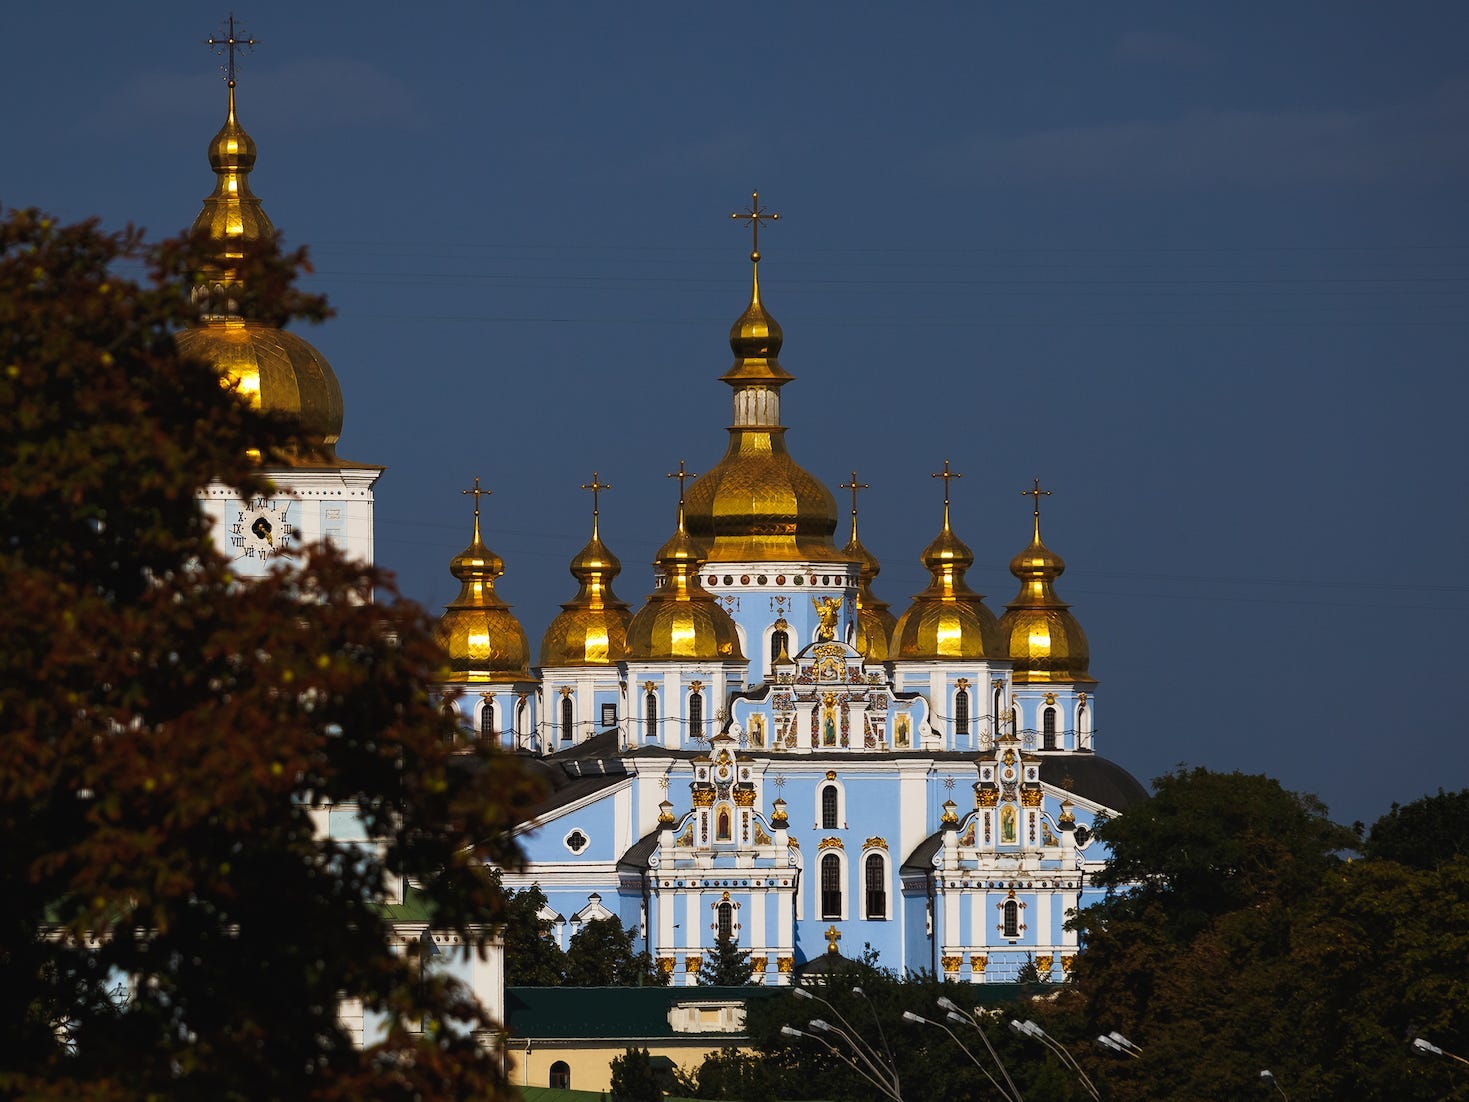 St.-Michael-Kloster mit goldener Kuppel in Kiew, Ukraine: Eine orthodoxe Kirche mit goldener Kuppel, mehreren hellen Türmen und hellblauen Wänden.